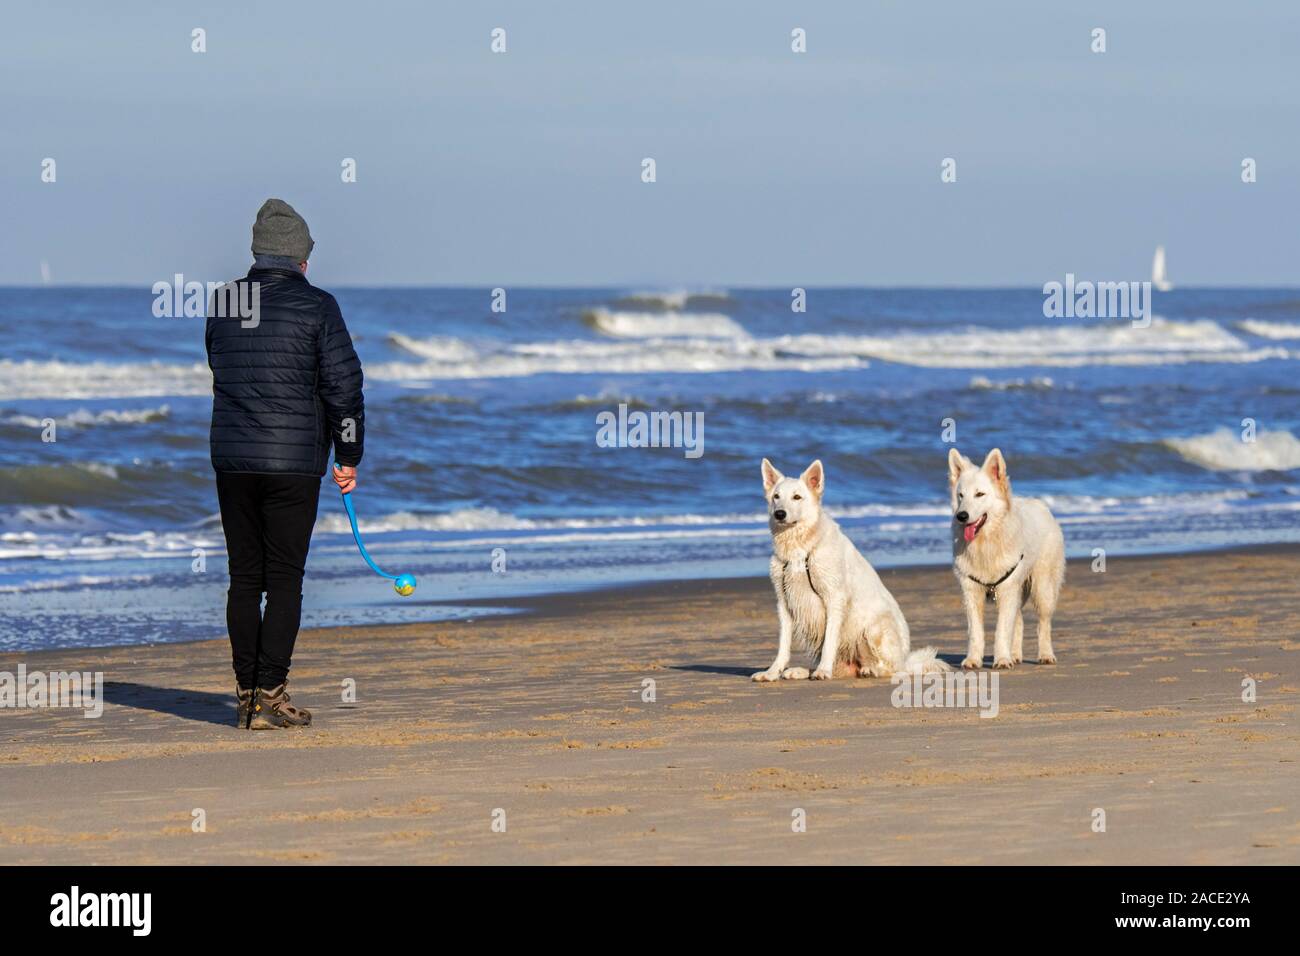 Proprietario del cane con palla da tennis launcher fetch giocando sulla spiaggia con due scatenato Berger Blanc Suisse cani / bianco Svizzero di pastori Foto Stock